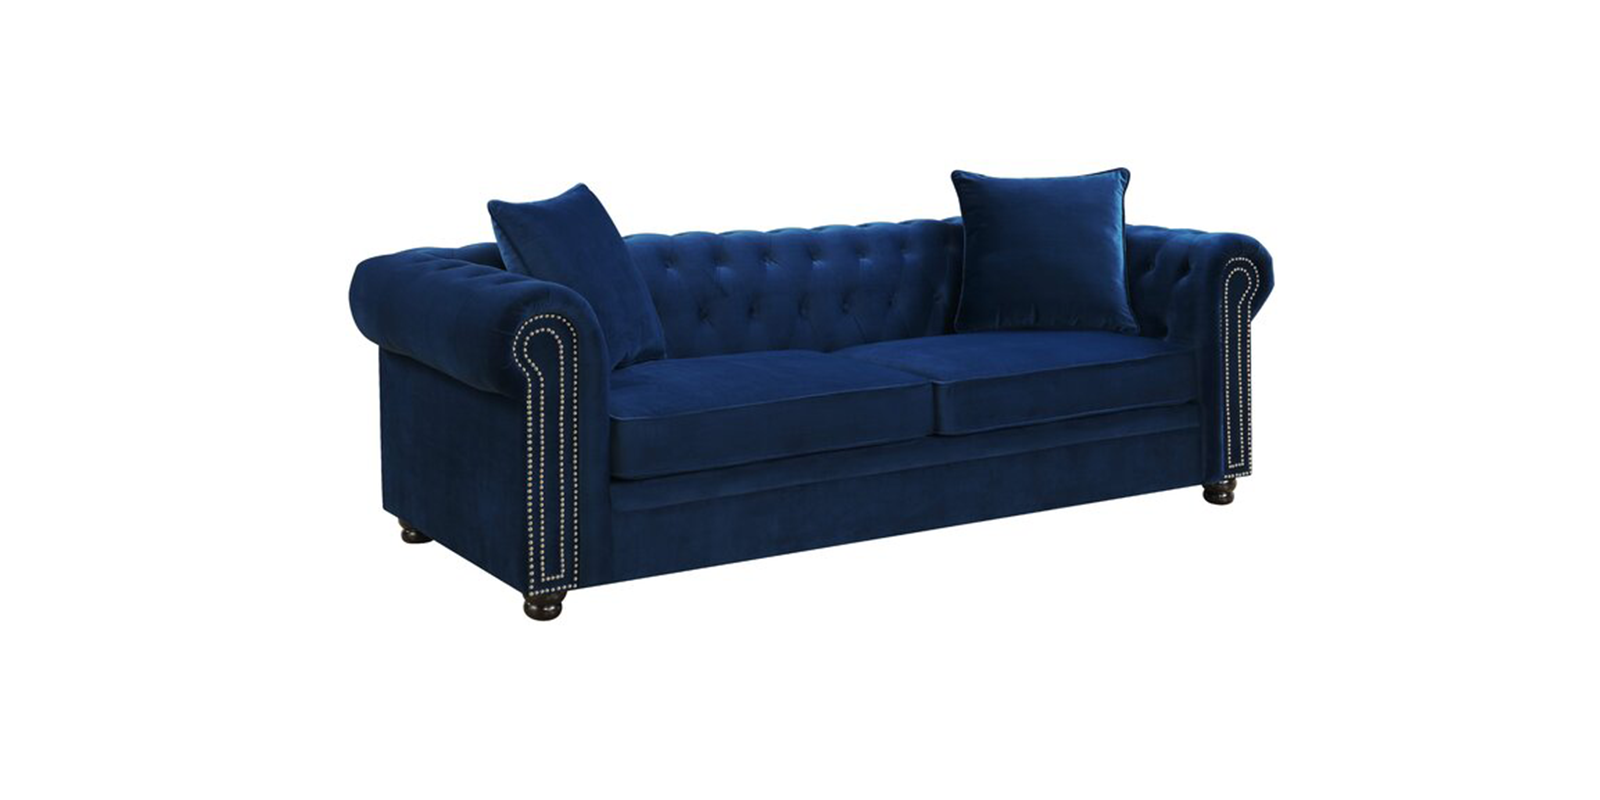 Perceptive Velvet 3 Seater Sofa in Navy Blue Colour - Dreamzz ...